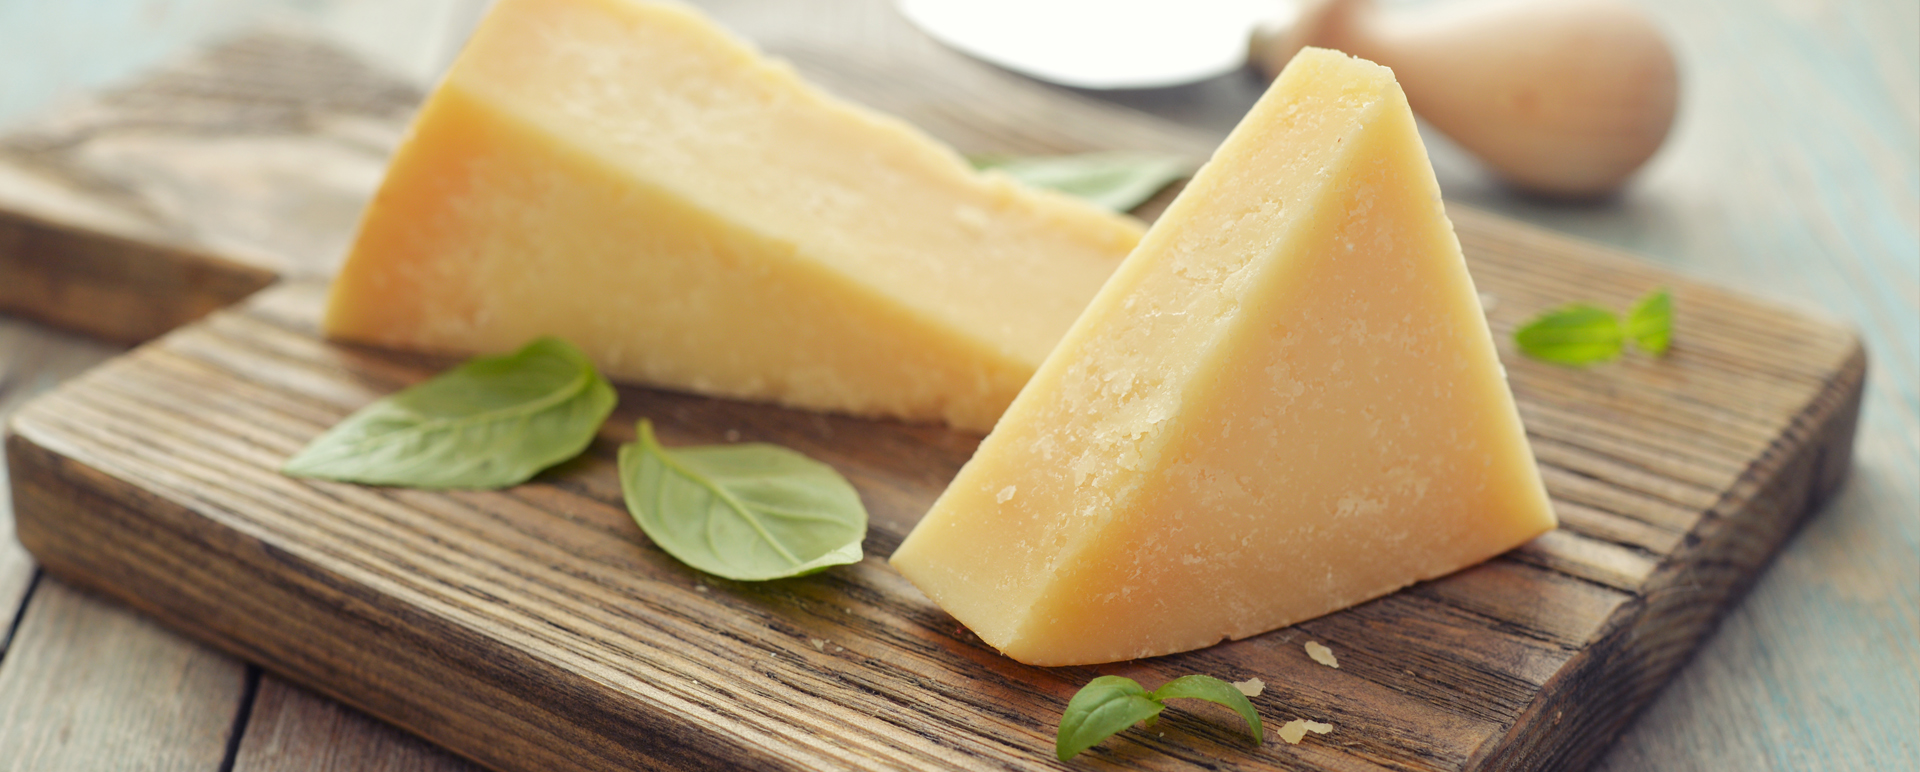 チーズの壁紙,食物,チーズ,プロセスチーズ,乳製品